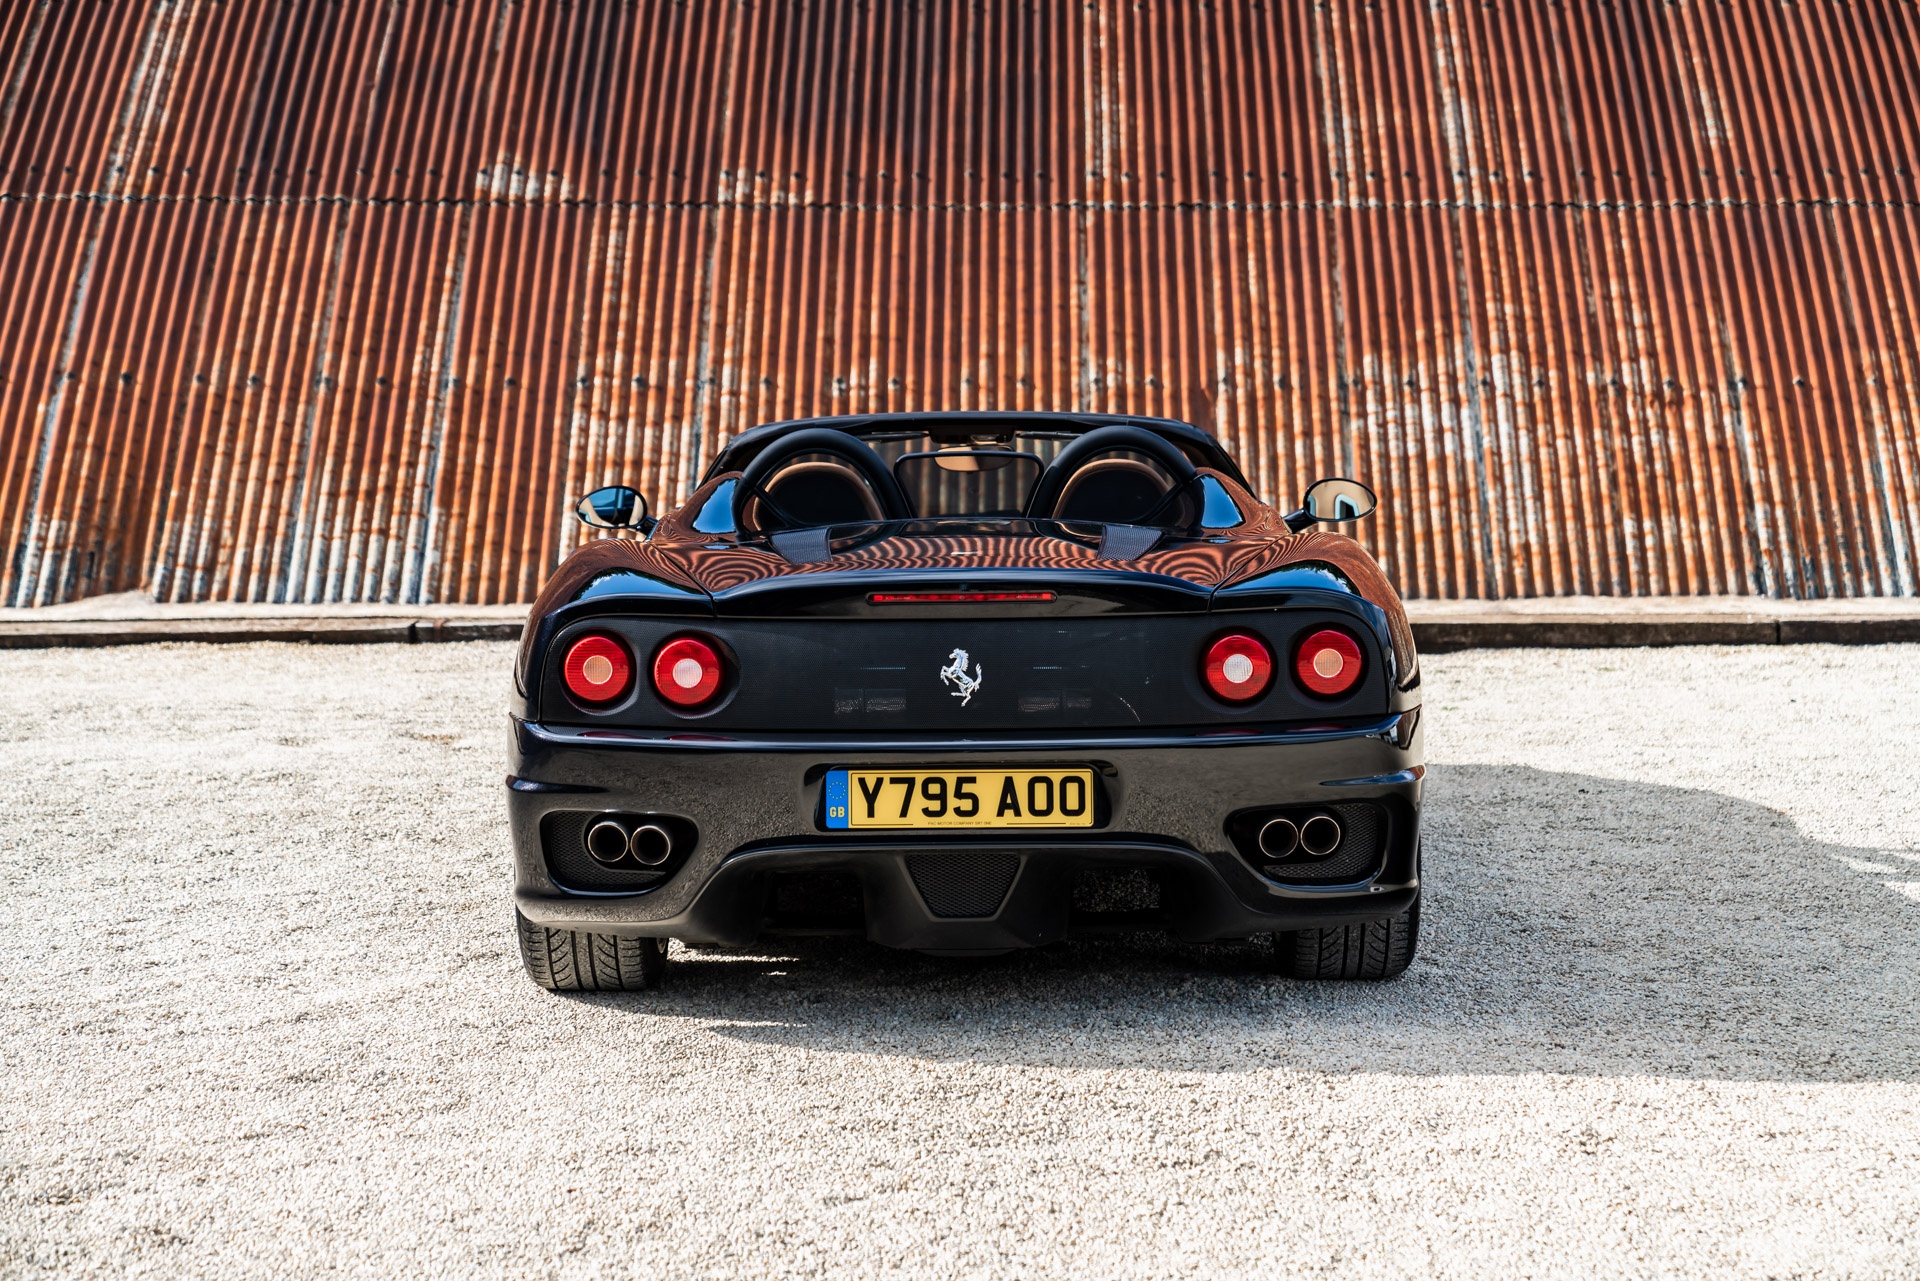 Chi tiết siêu xe Ferrari 360 Spider của David Beckham - ảnh 19